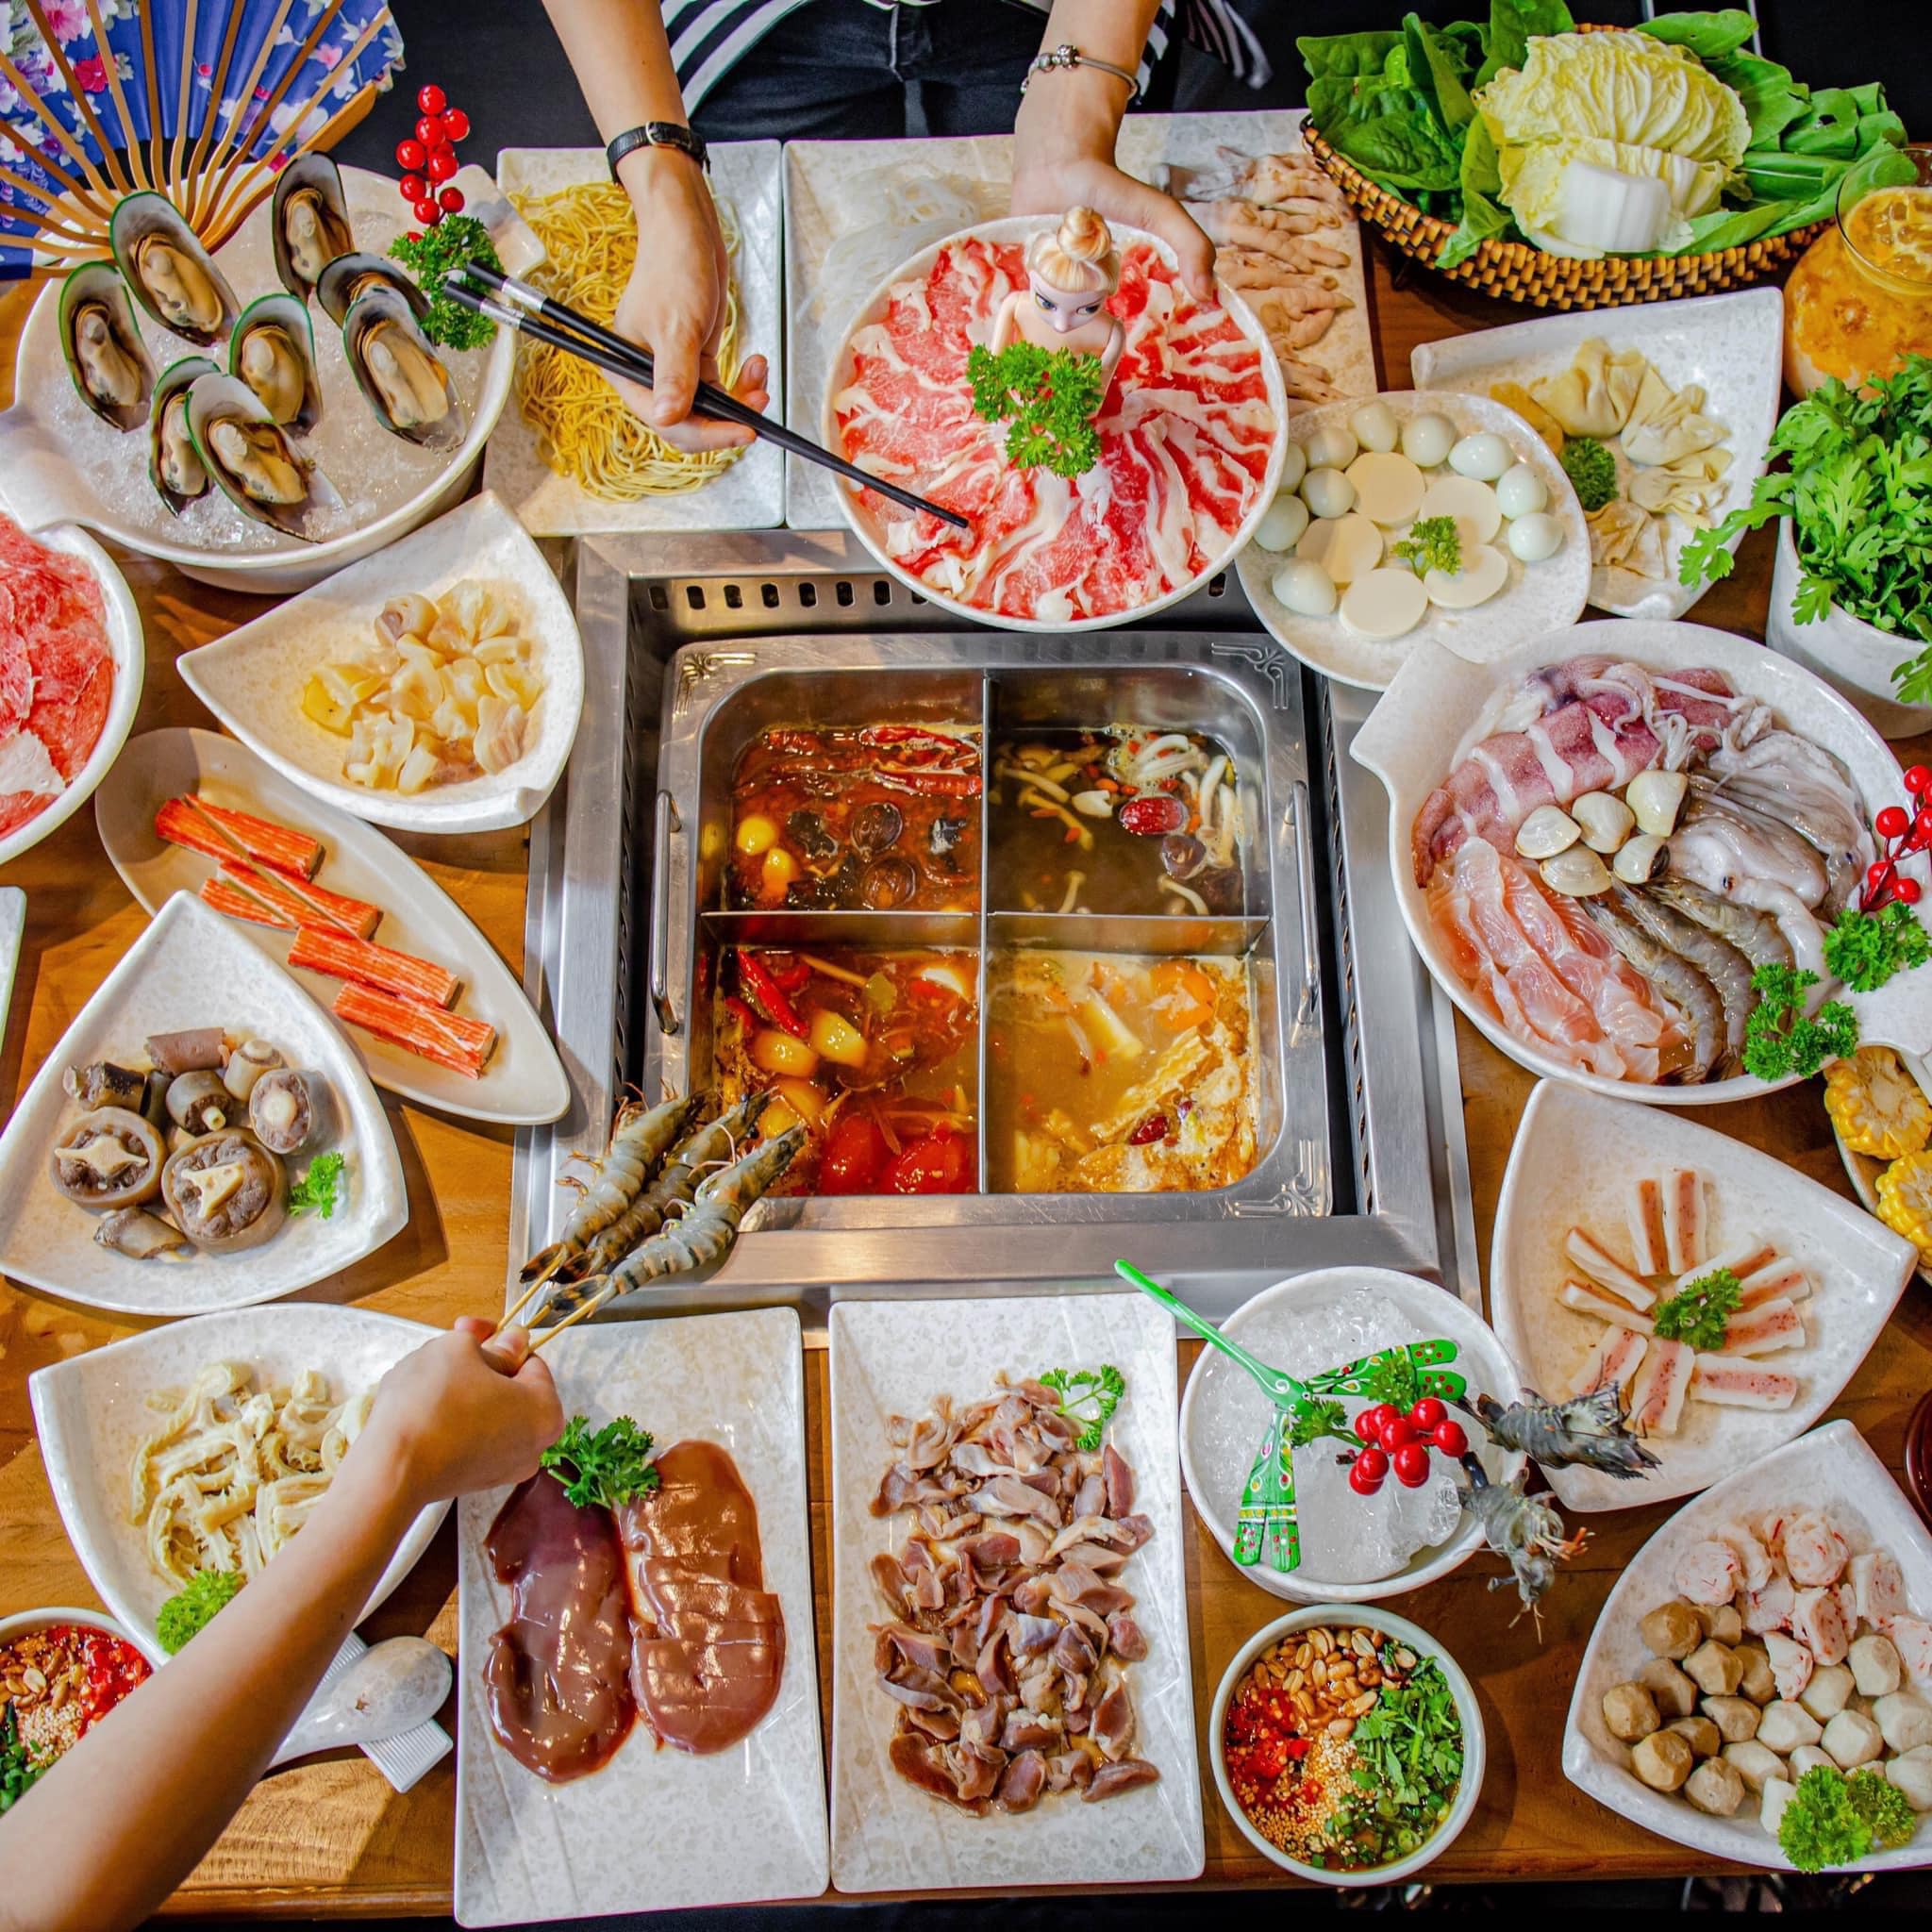 Đồ ăn tại Nhà hàng buffet Lẩu Hương Cảng (Ảnh Internet)